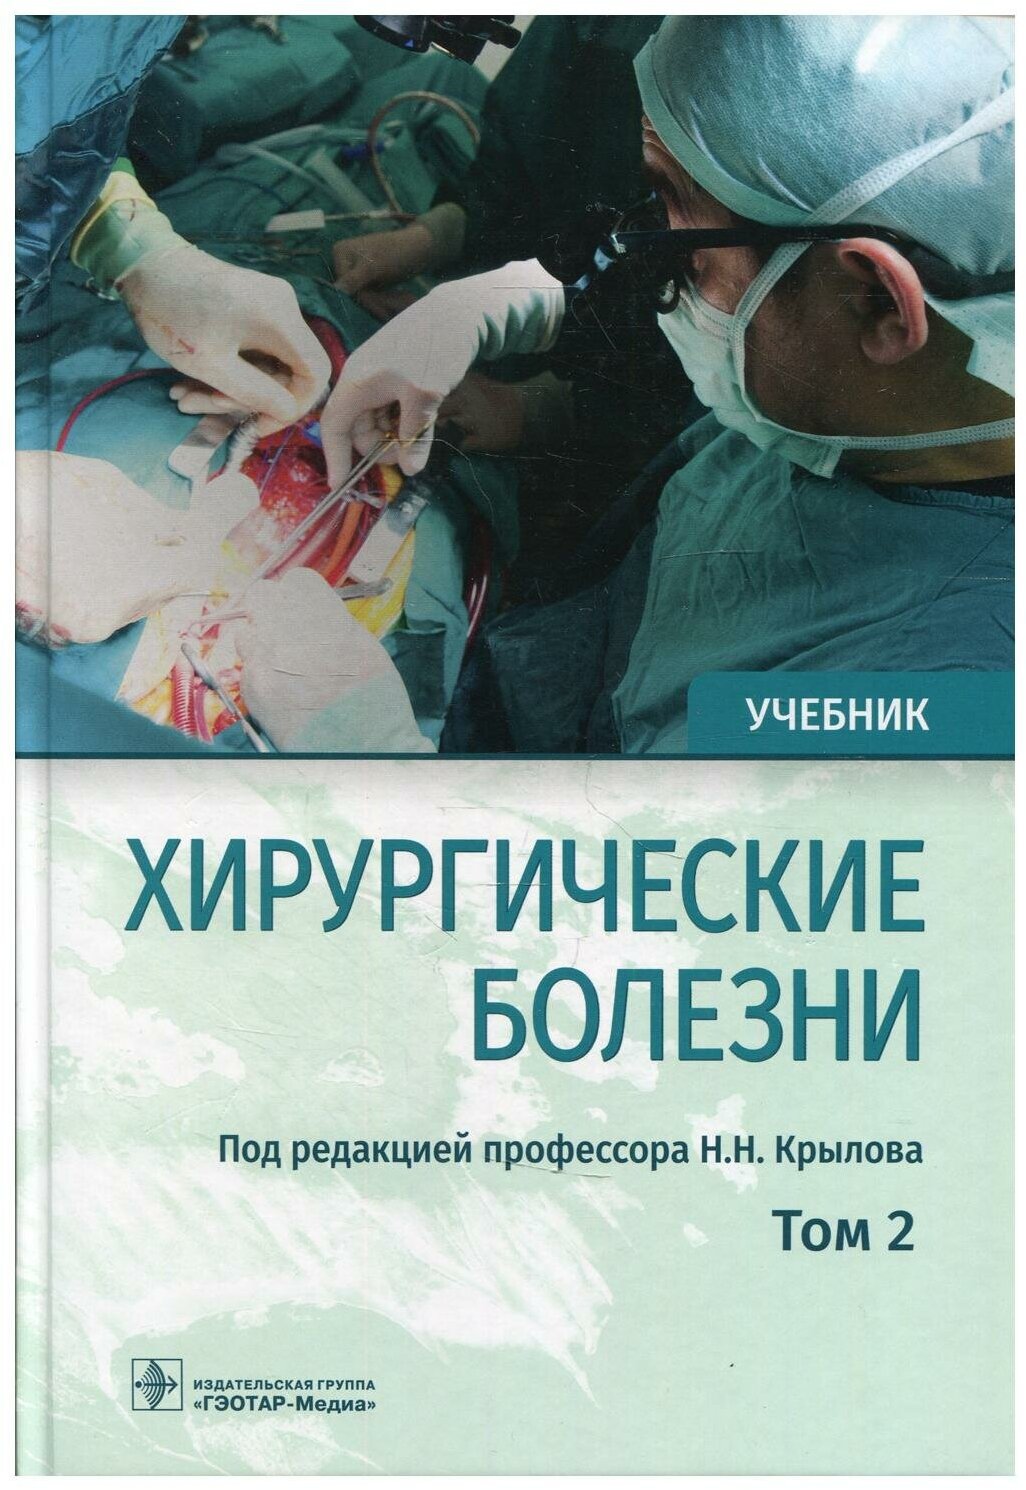 Хирургические болезни: Учебник. В 2 т. Т. 2